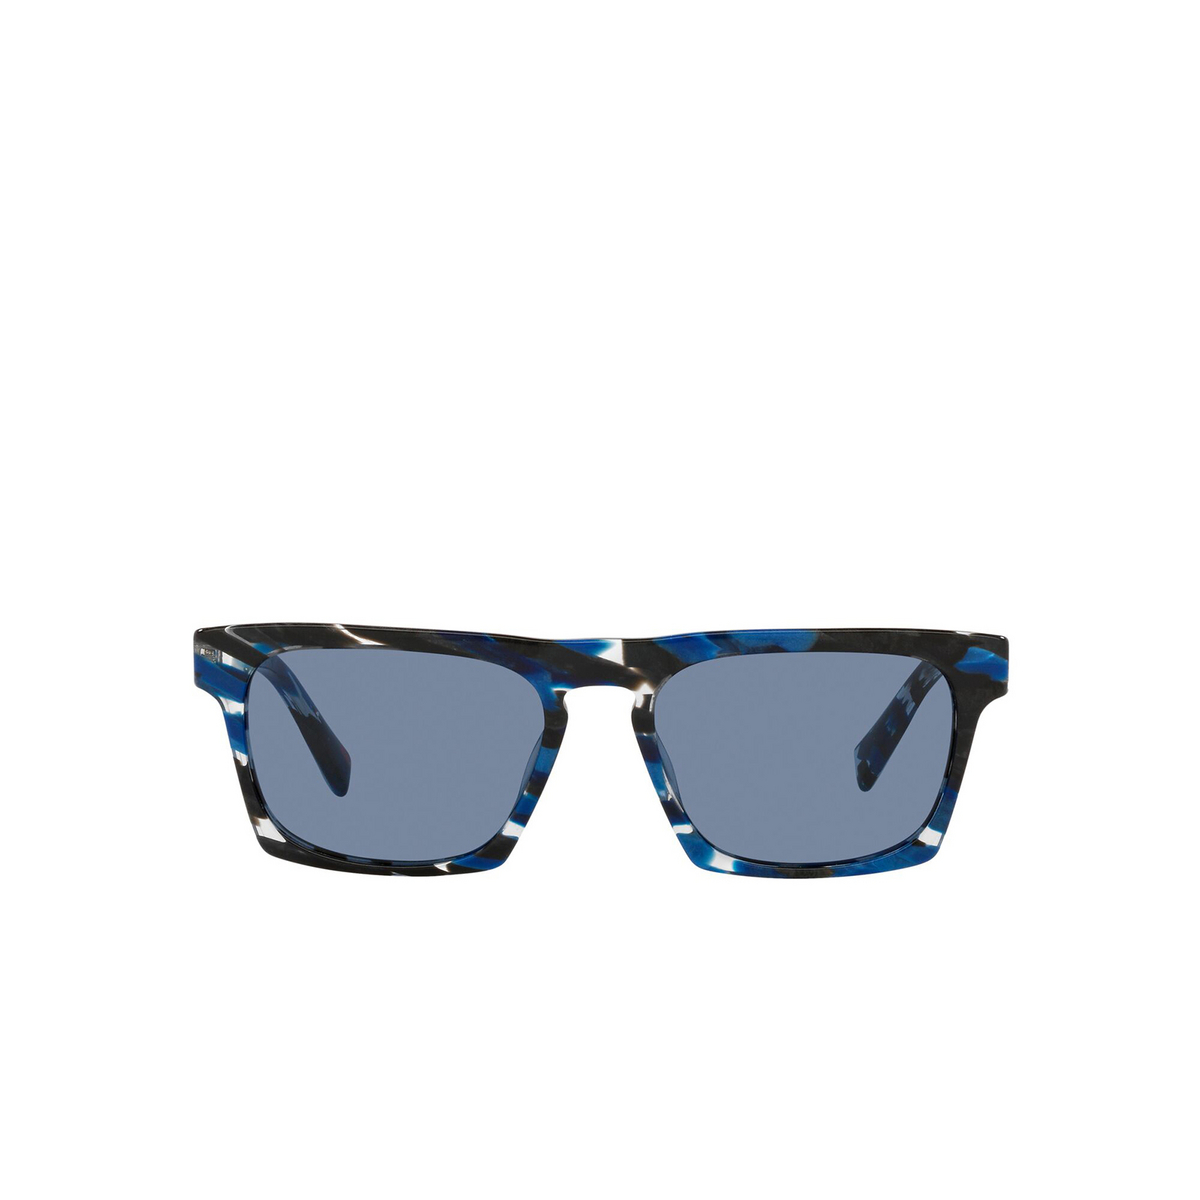 Alain Mikli® Square Sunglasses: N°861 Sun A05065 color Havana Blue Black 003/55 - front view.